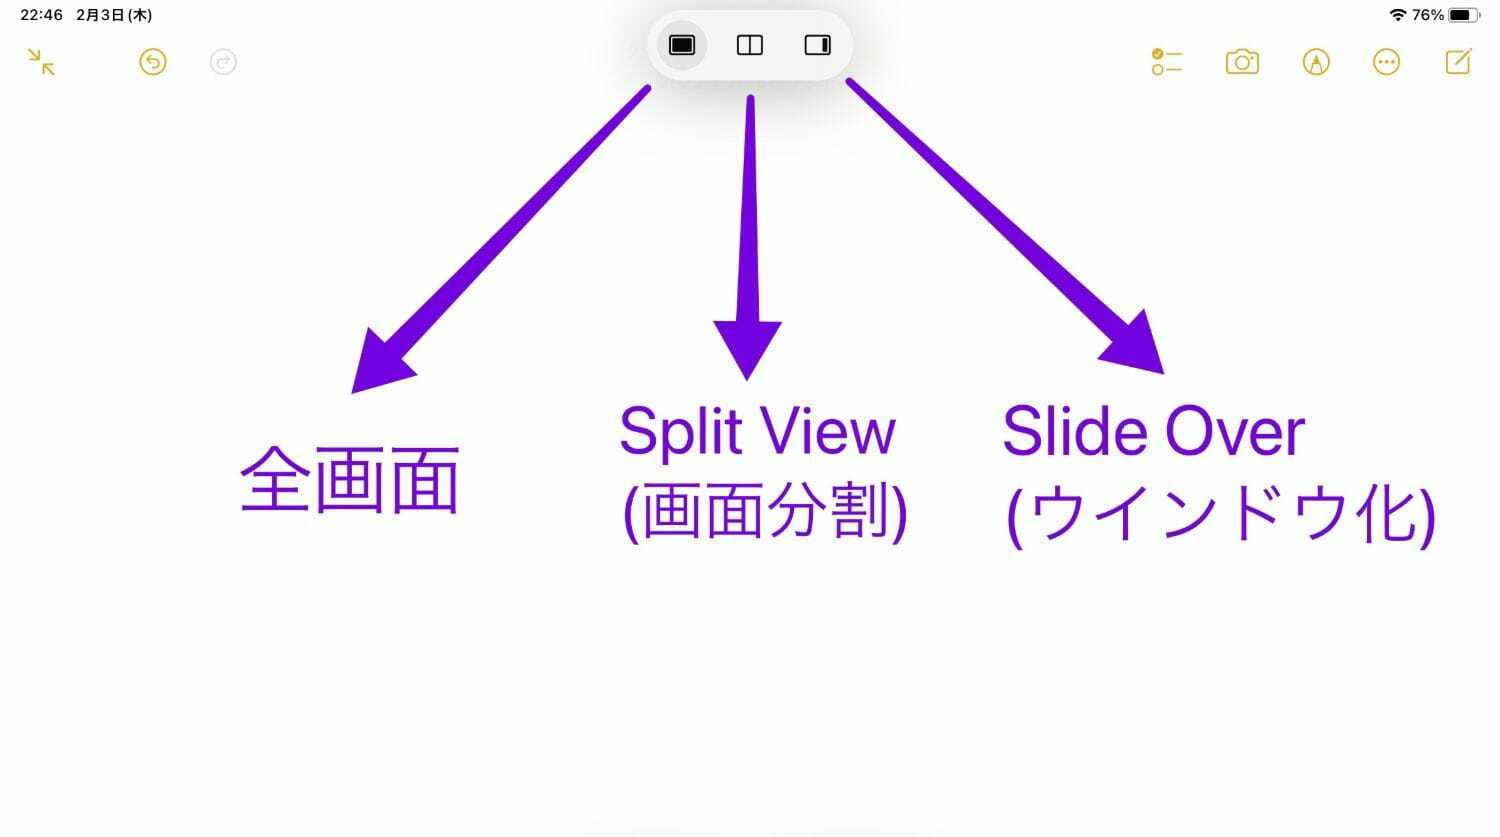 タップすると左から「全画面」・「Split View」・「Slide Over」が表示